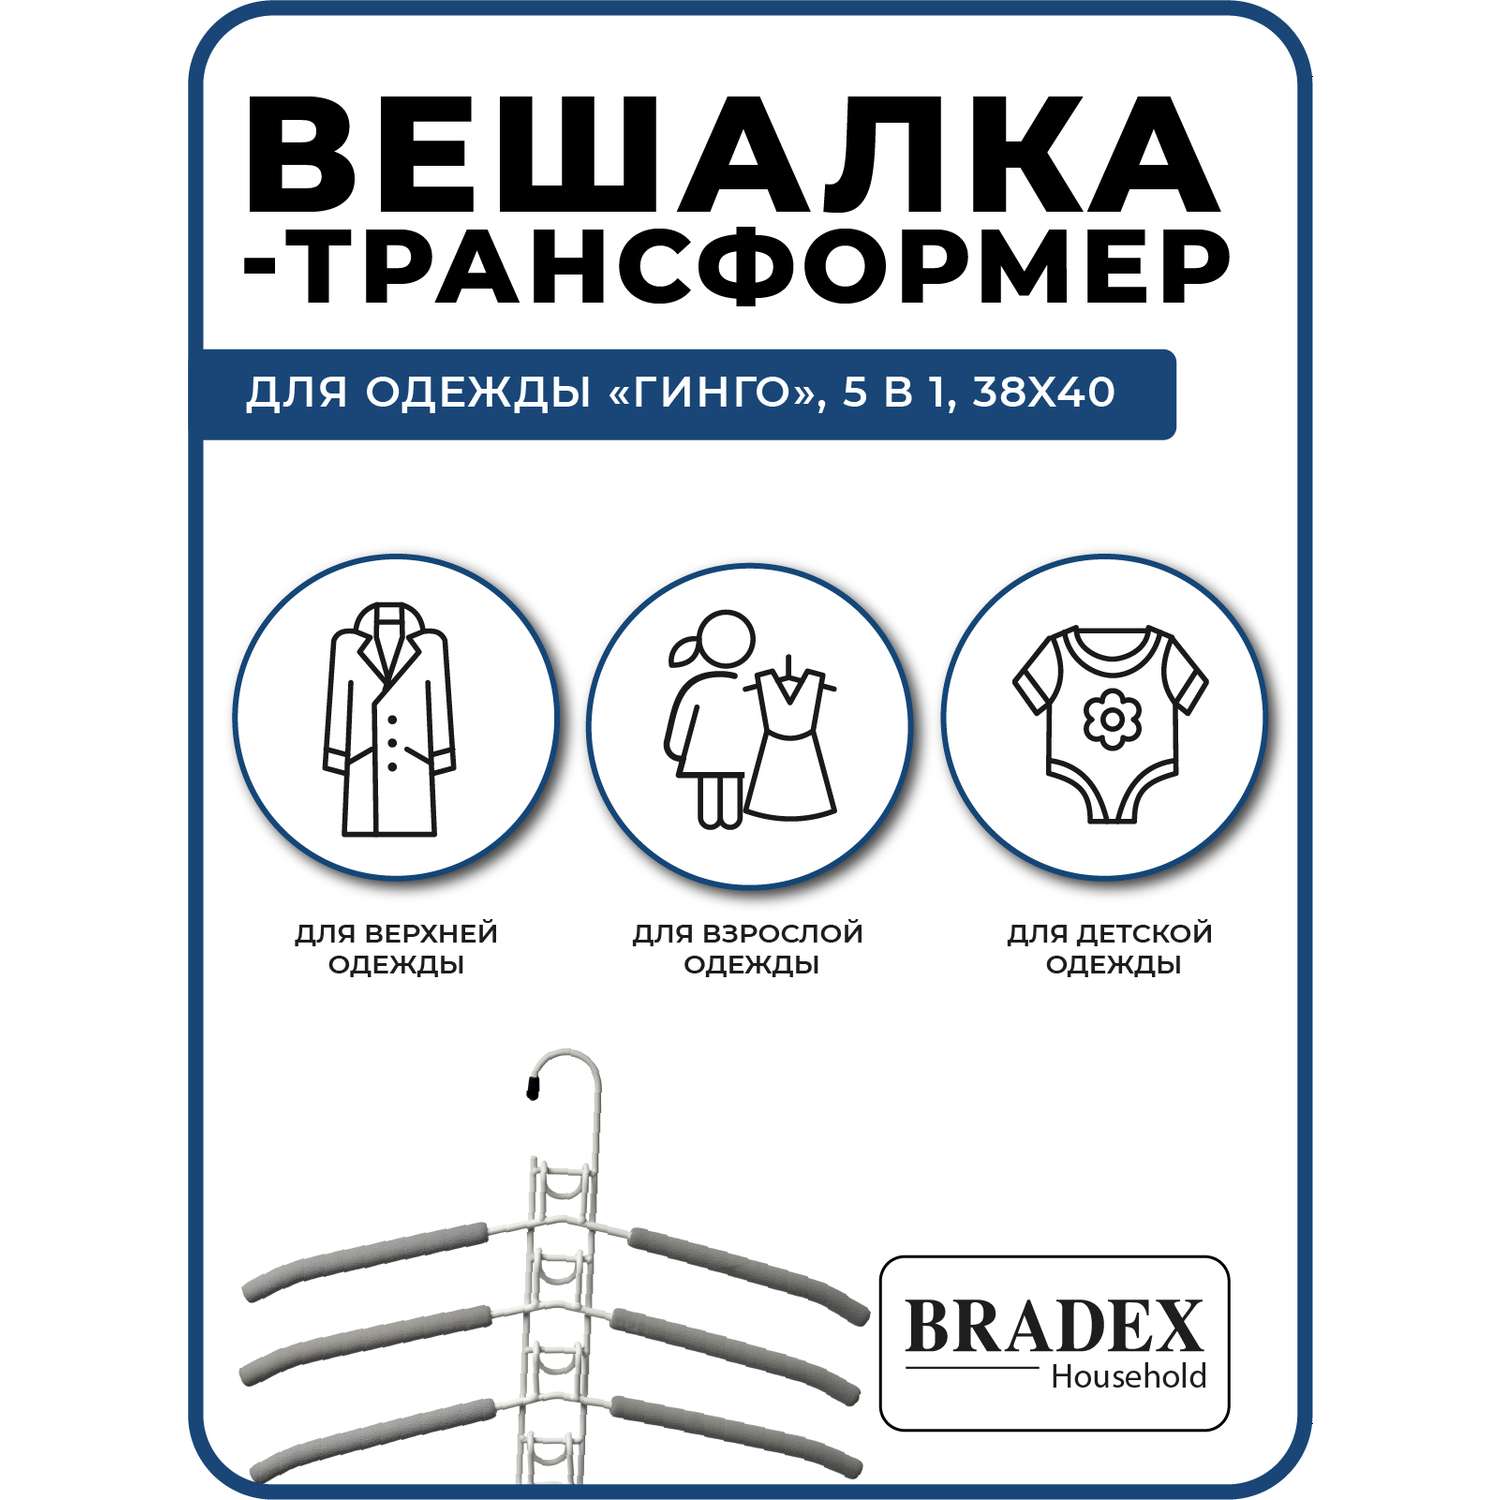 Вешалка Bradex трансформер для одежды 5 в 1 - фото 4